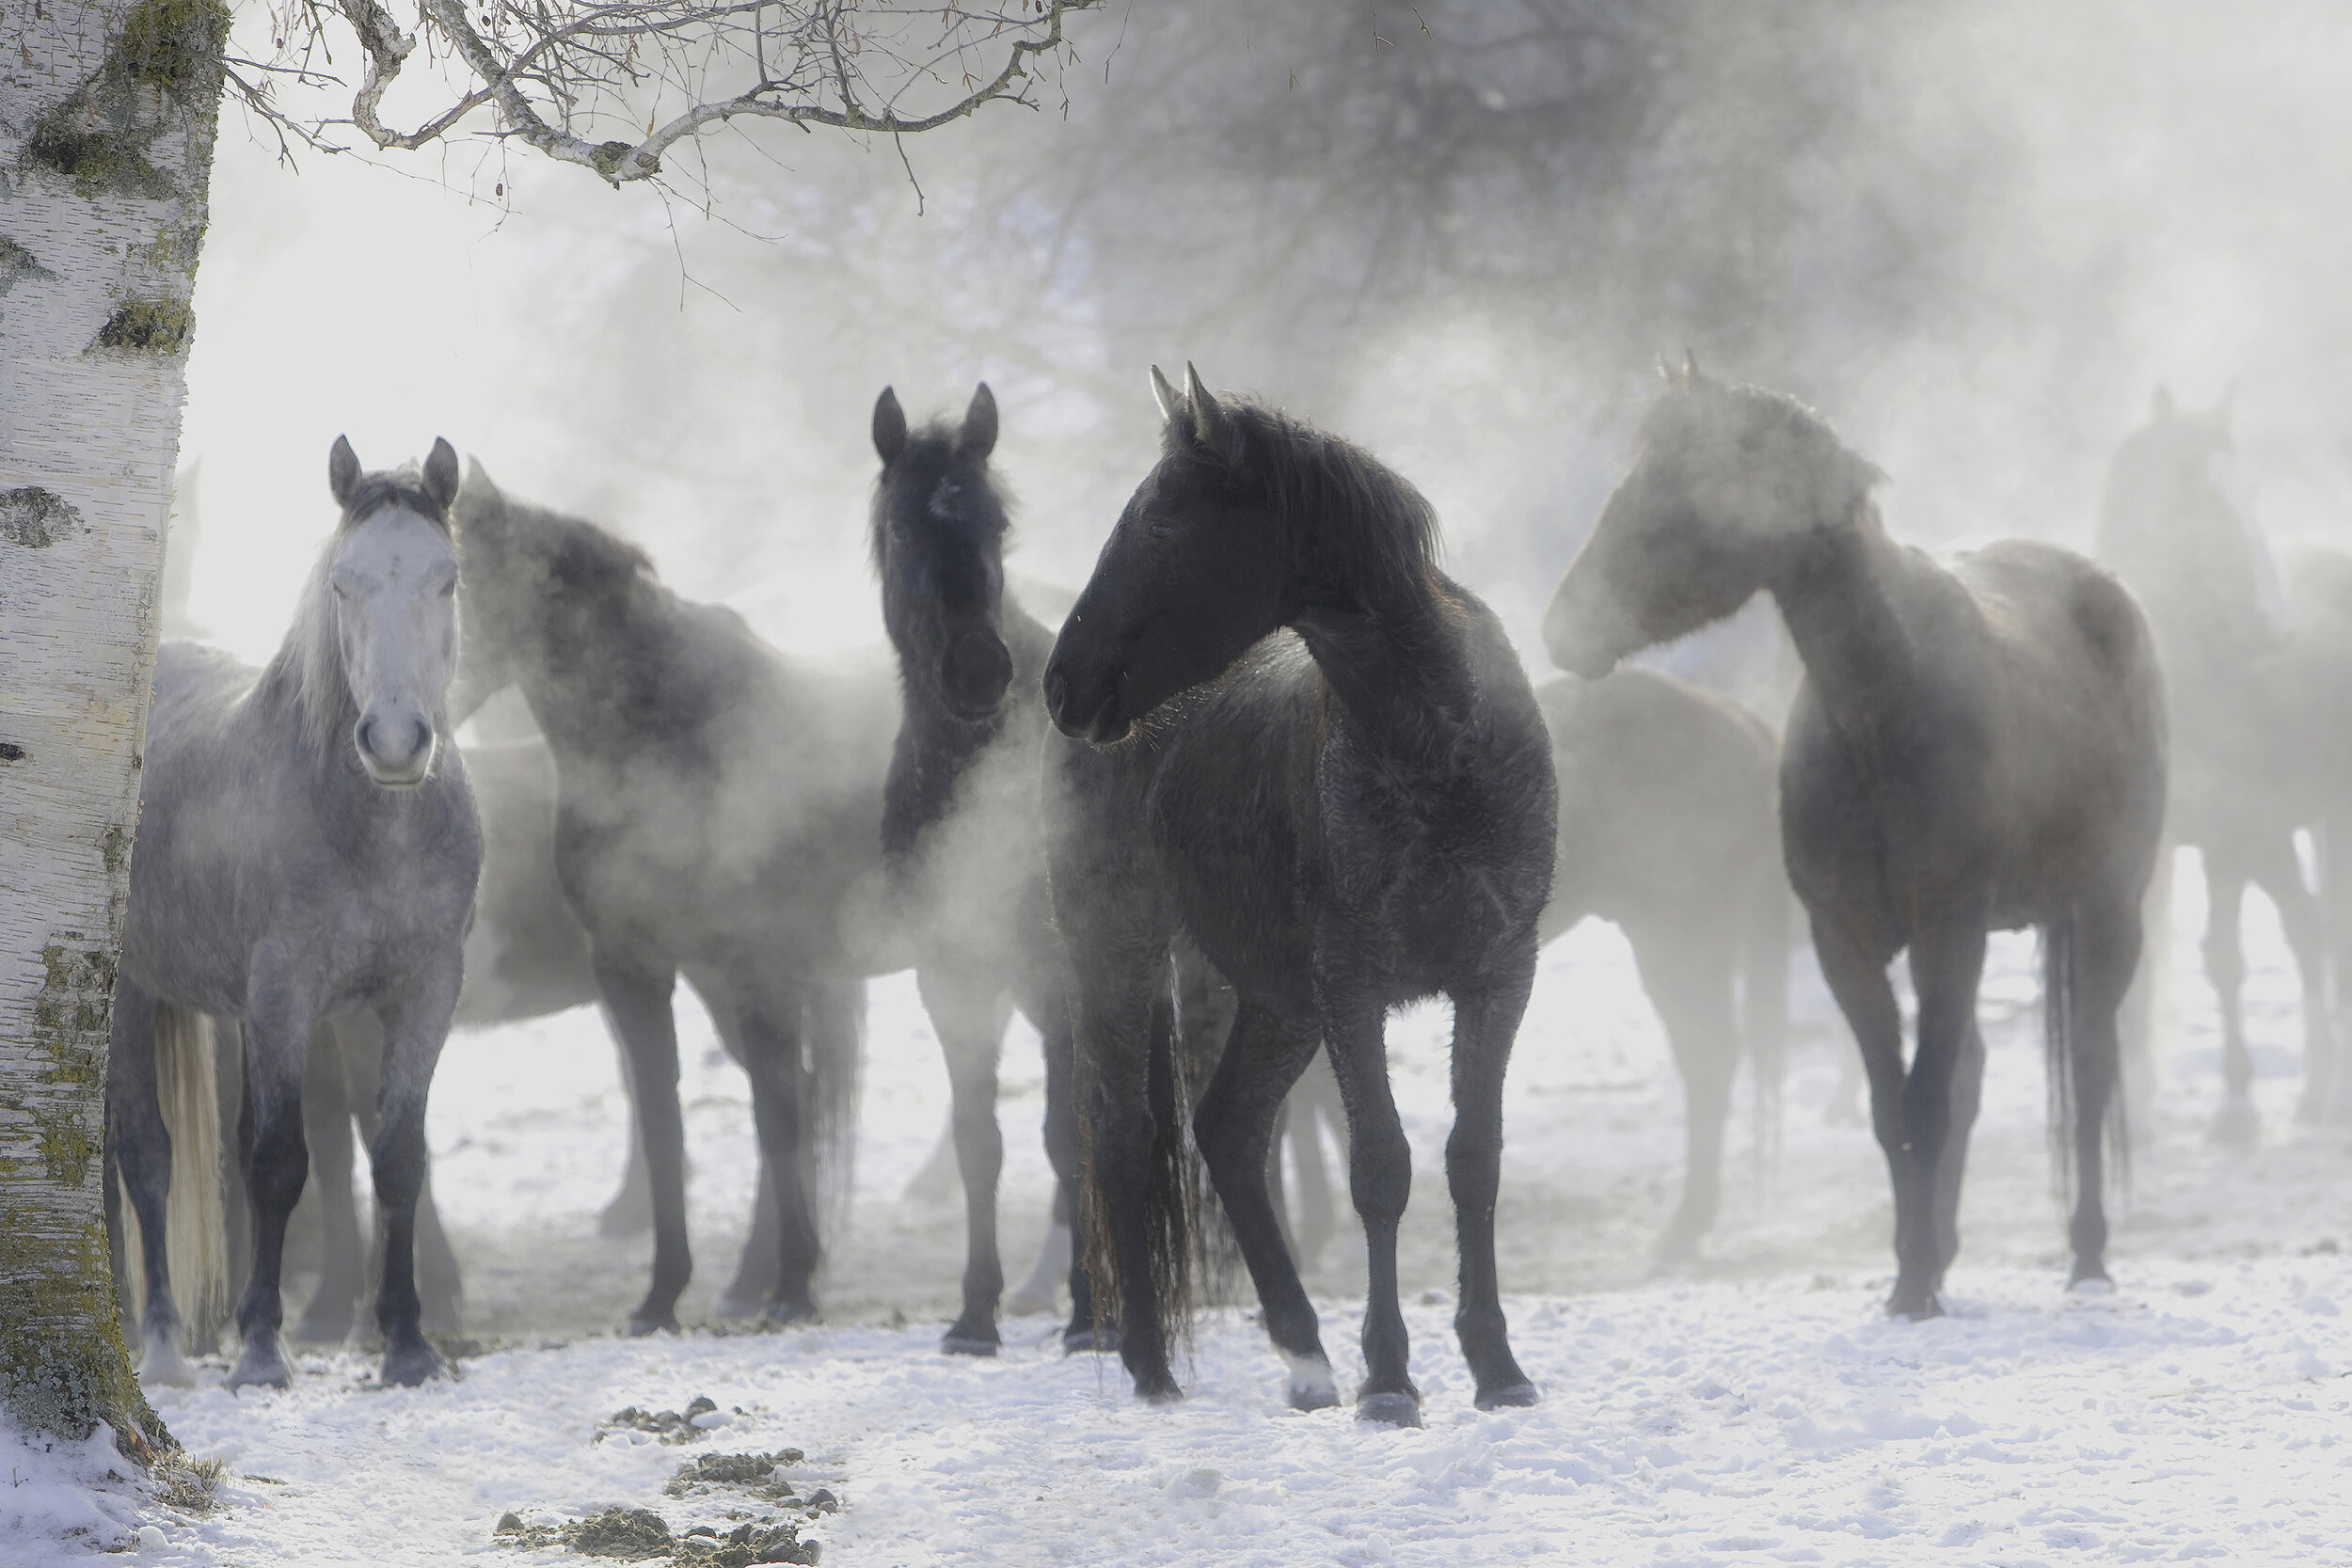 Horses in the Mist, Larry Calof // Park City, UT (Senior Citizen)